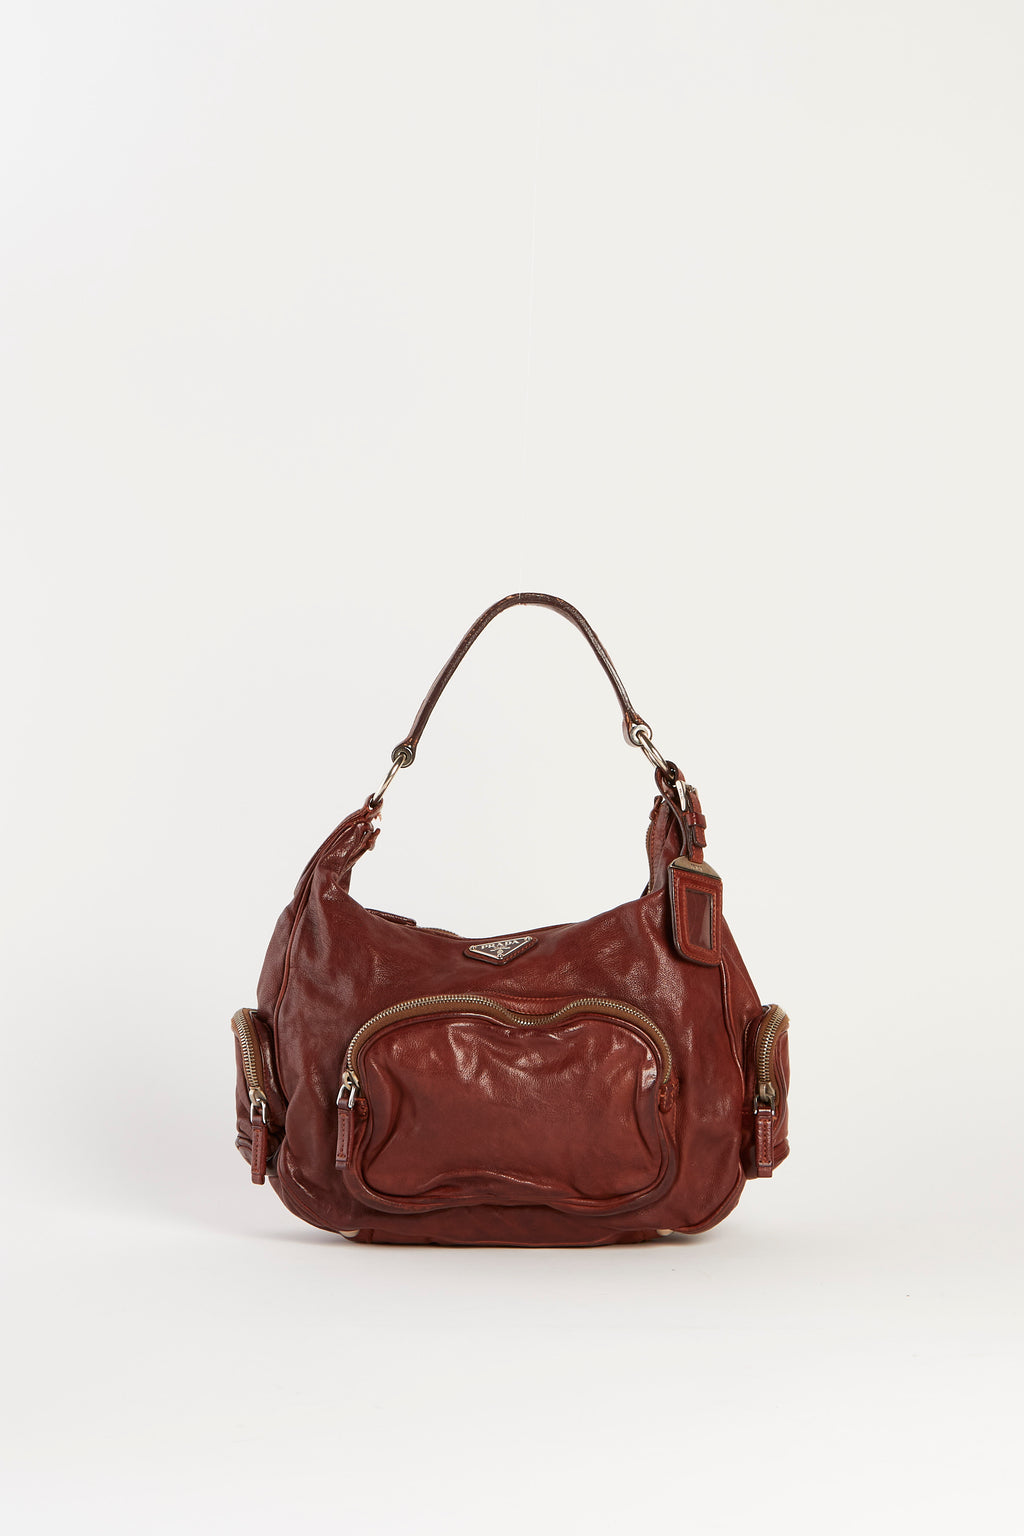 Vintage Prada Brown Leather Shoulder Bag